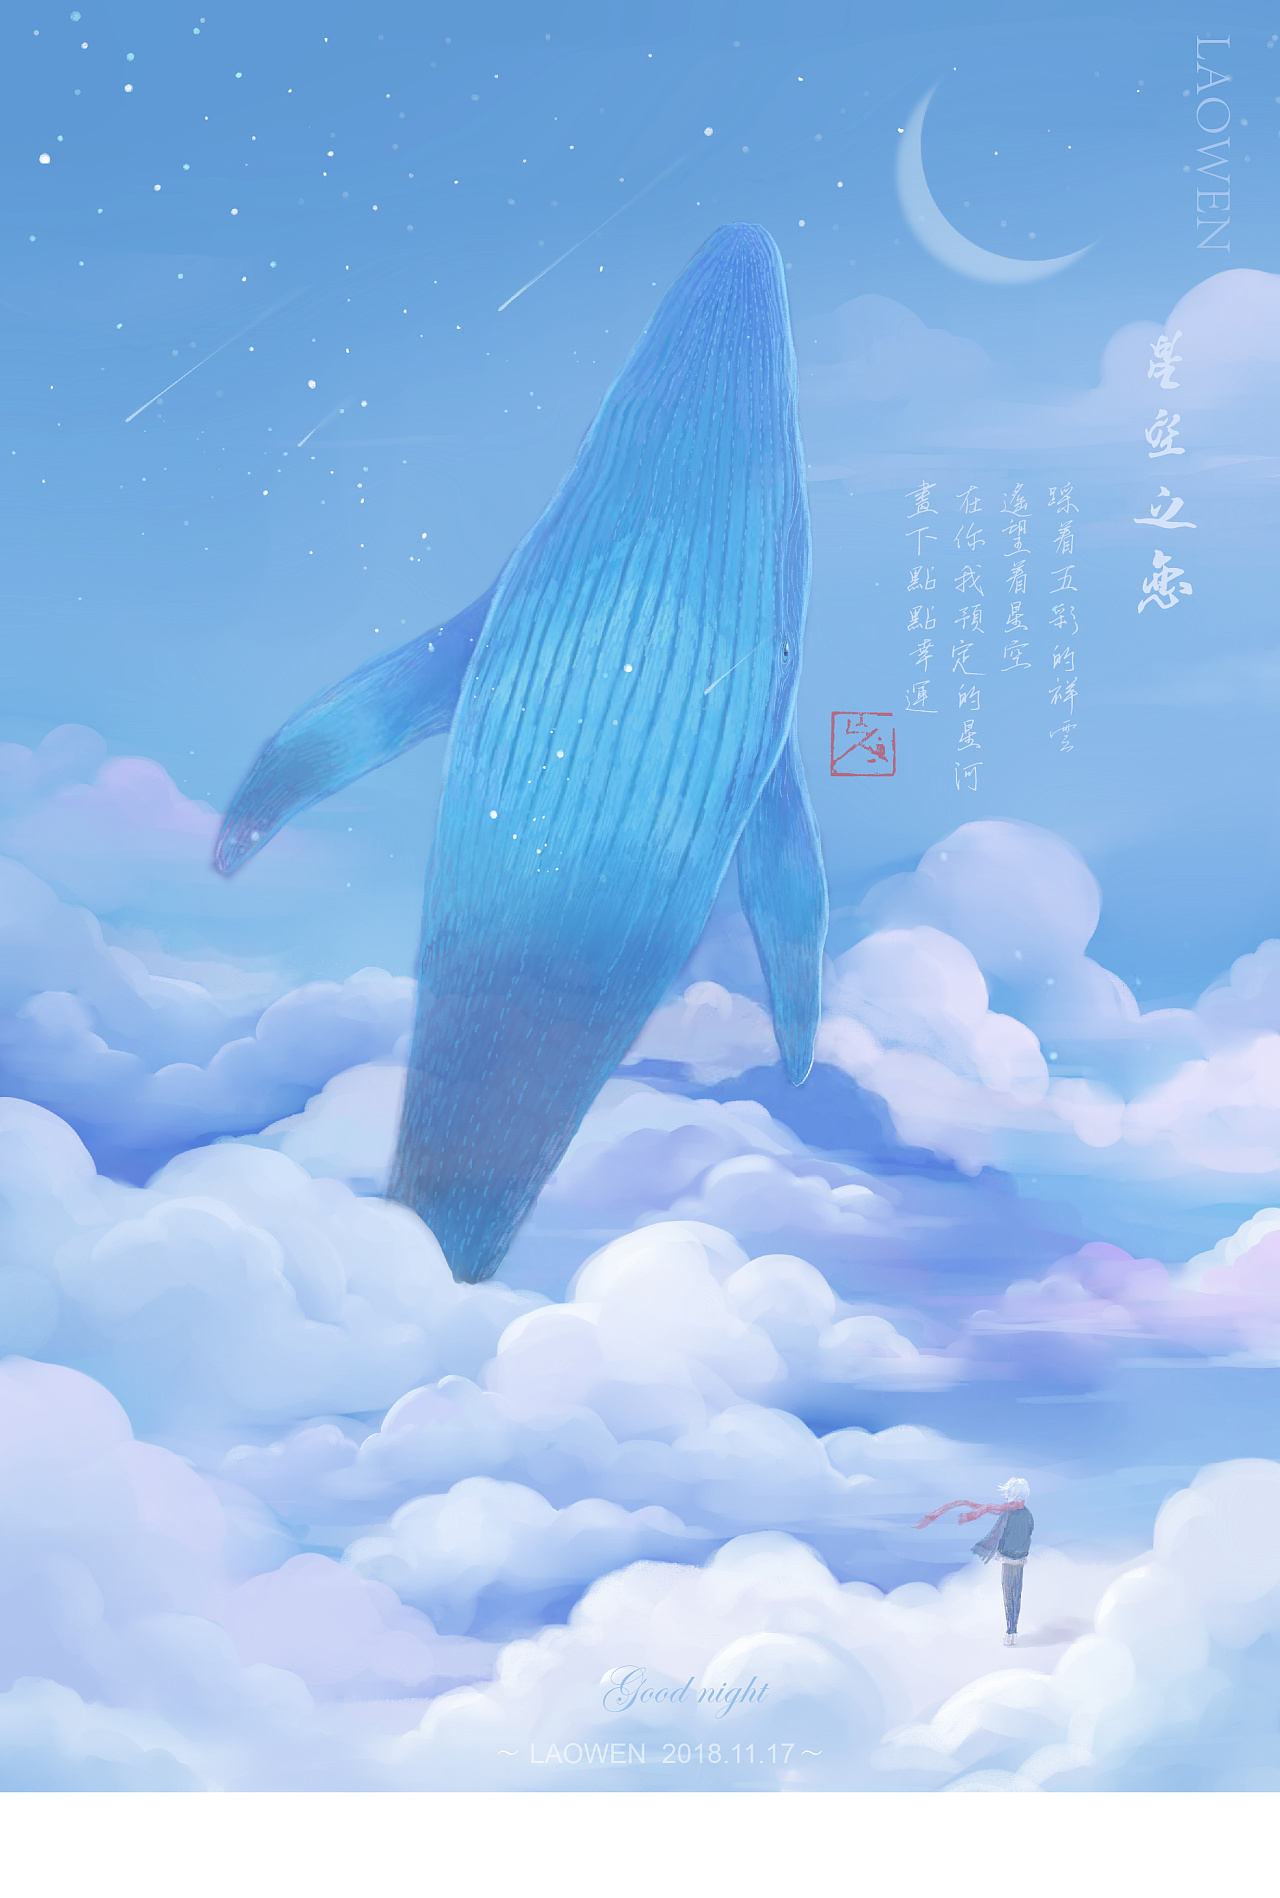 【晚安-星河之恋Ⅰ～Ⅳ】鲸鱼系列插画